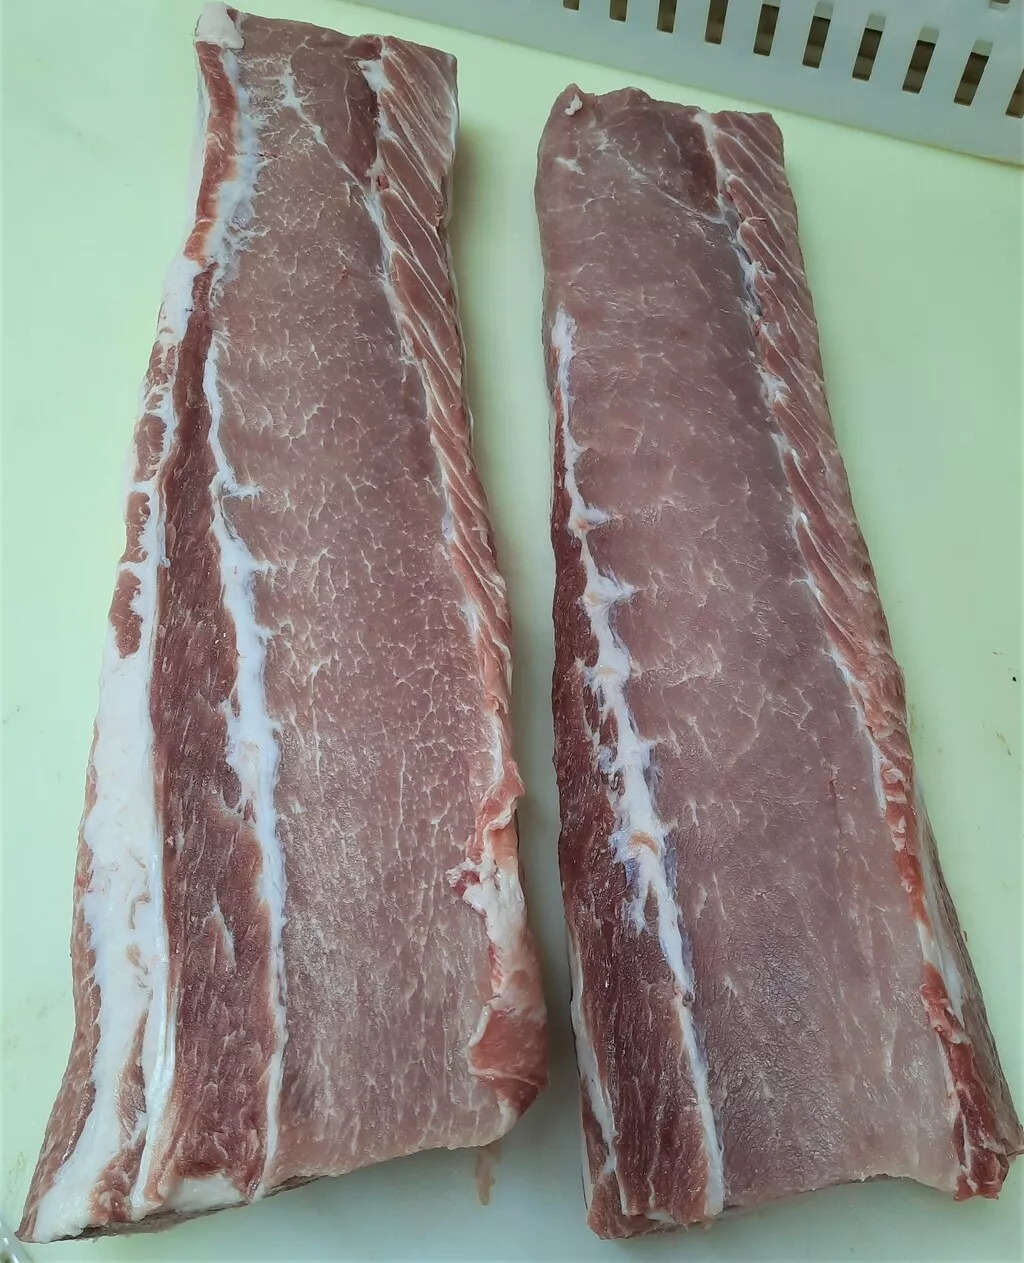   мясо свинины в Саратове 10